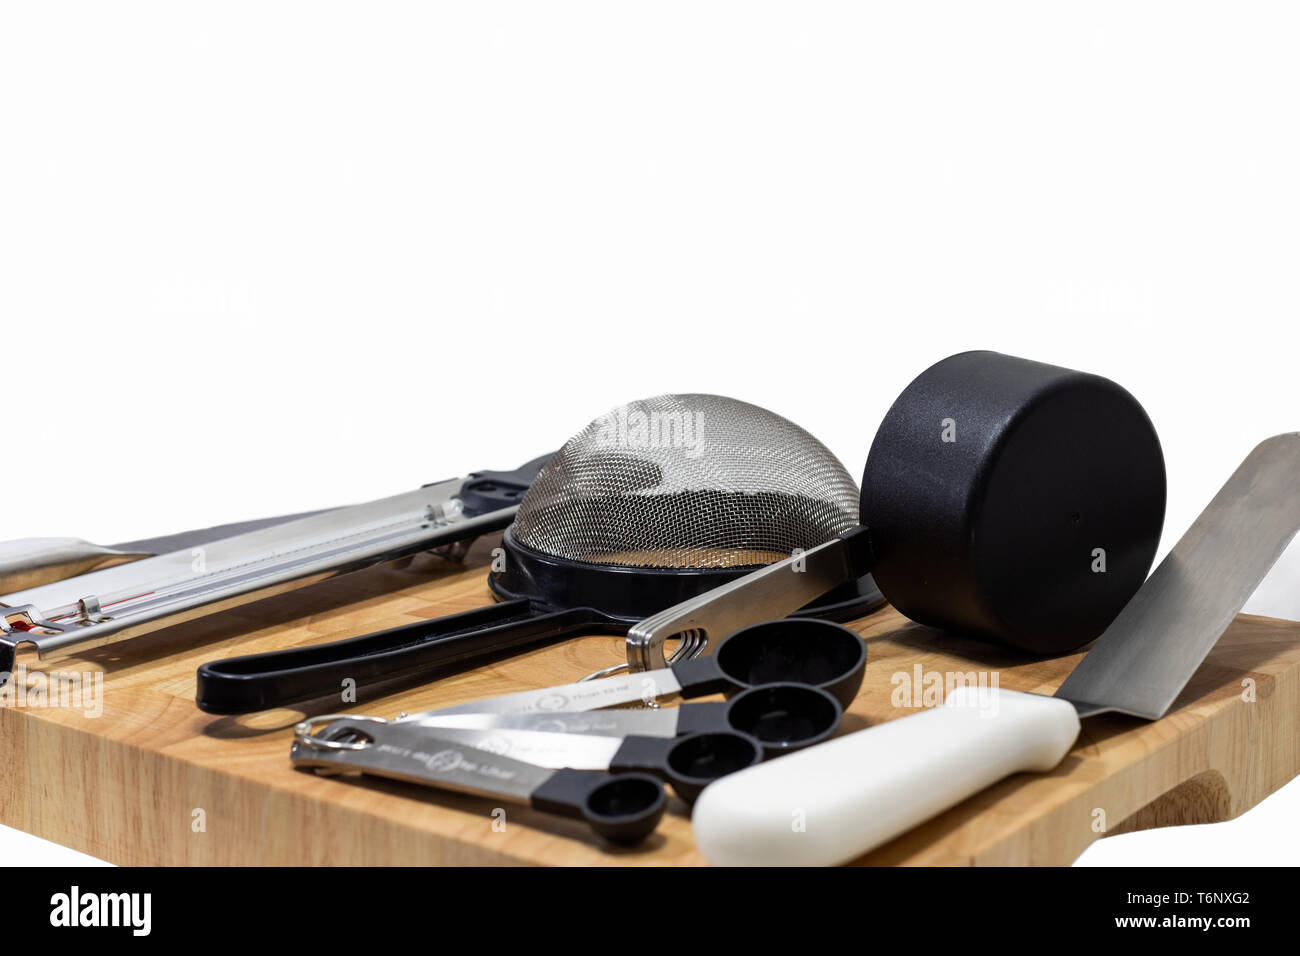 Mise à plat de cuisson/pâtisserie ustensiles essentiels avec billot de bois, acier inoxydable  + thème noir et blanc. Propre, moderne et minimaliste Banque D'Images